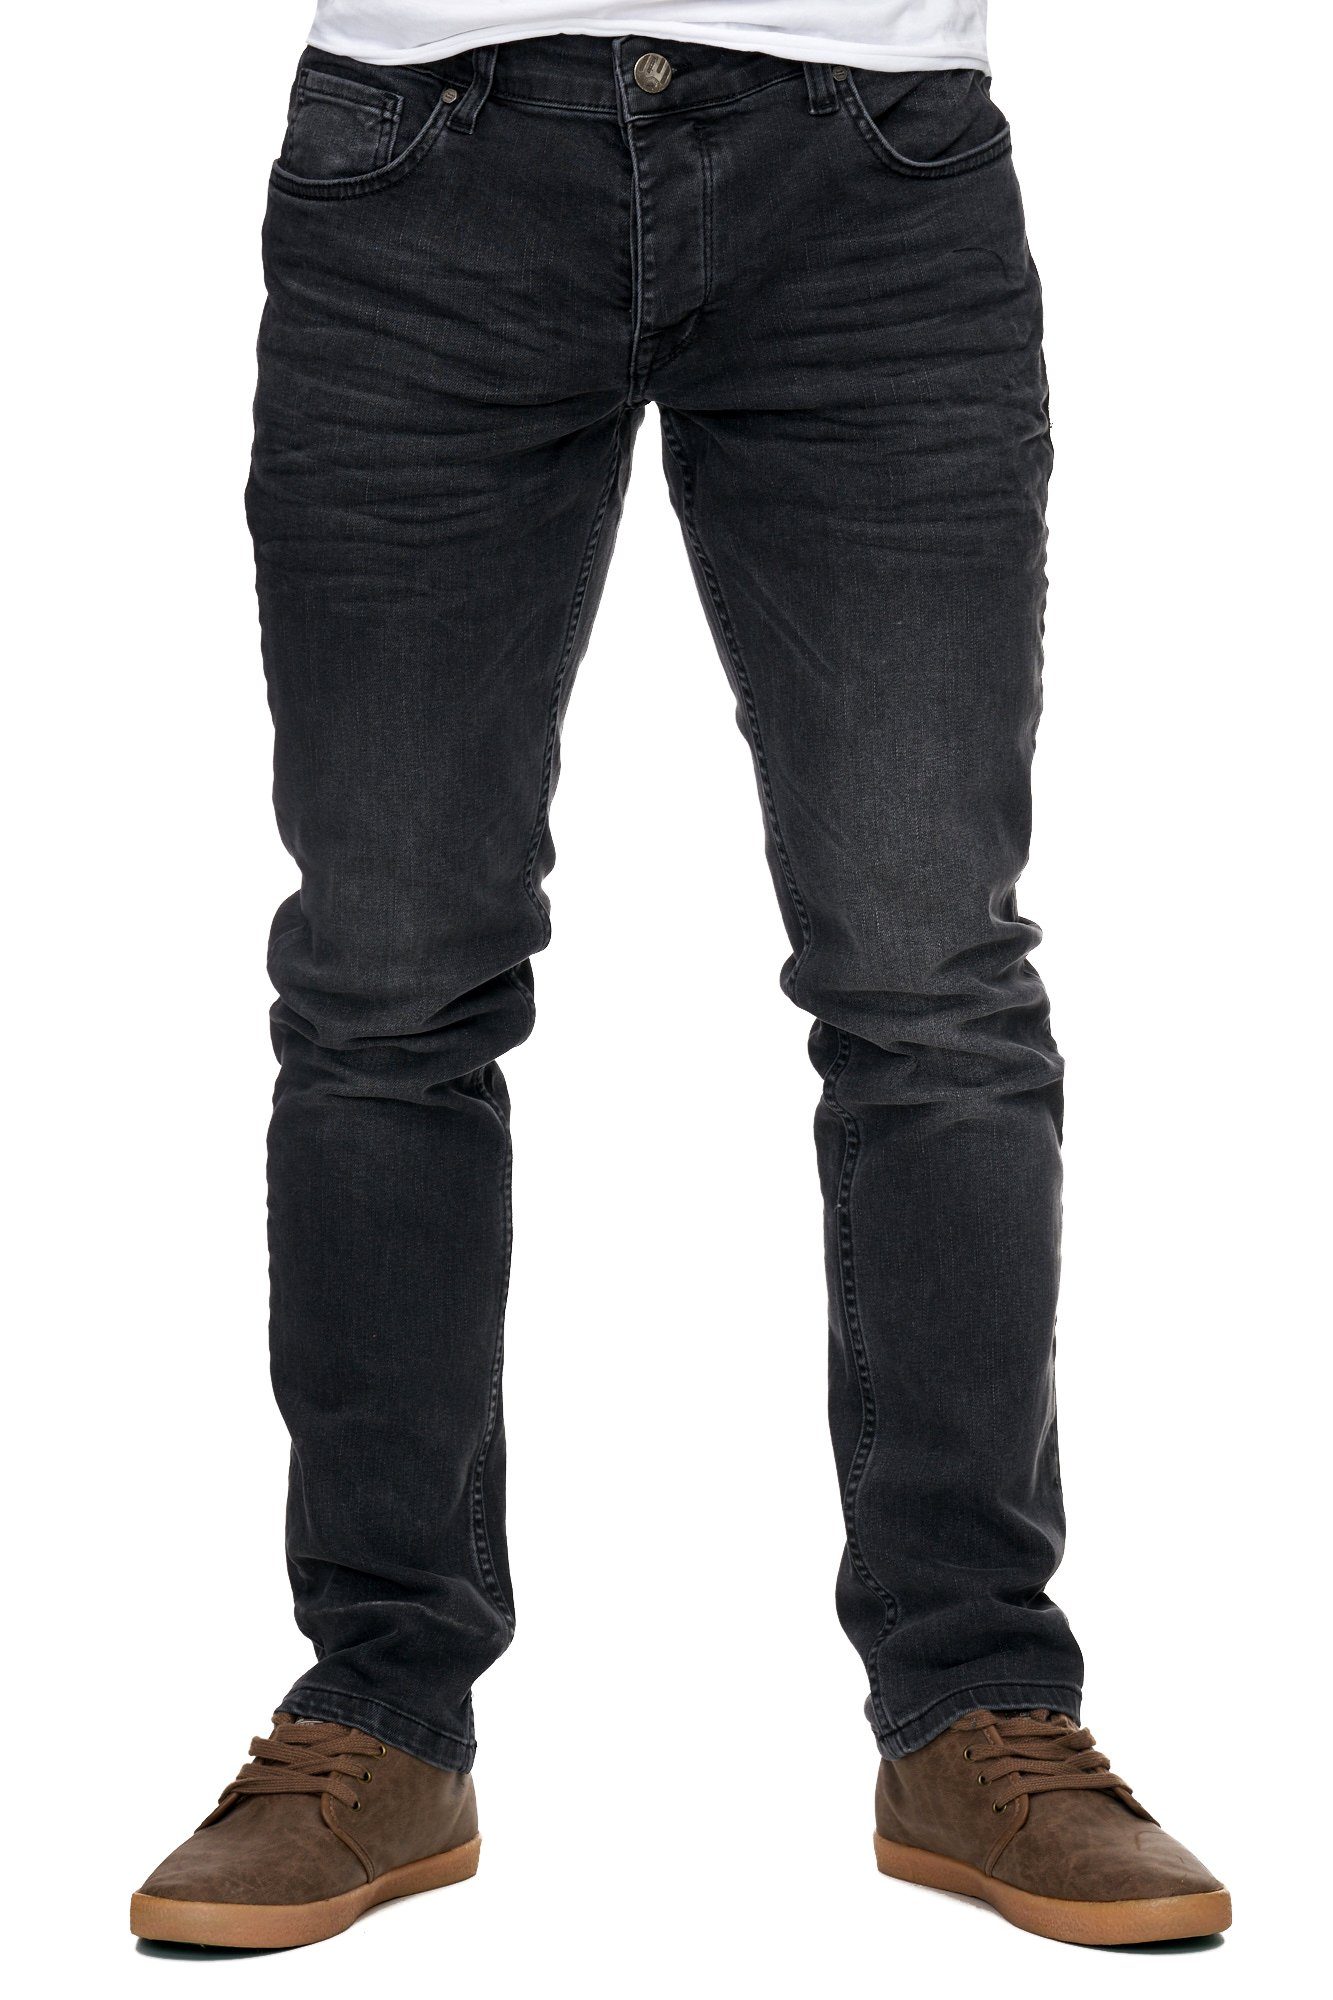 Style Jeans-Hose Basic Reslad Slim schwarz Stretch-Denim Stretch-Jeans Slim Jeans-Herren Jeans-Hose Fit Reslad Stretch Fit